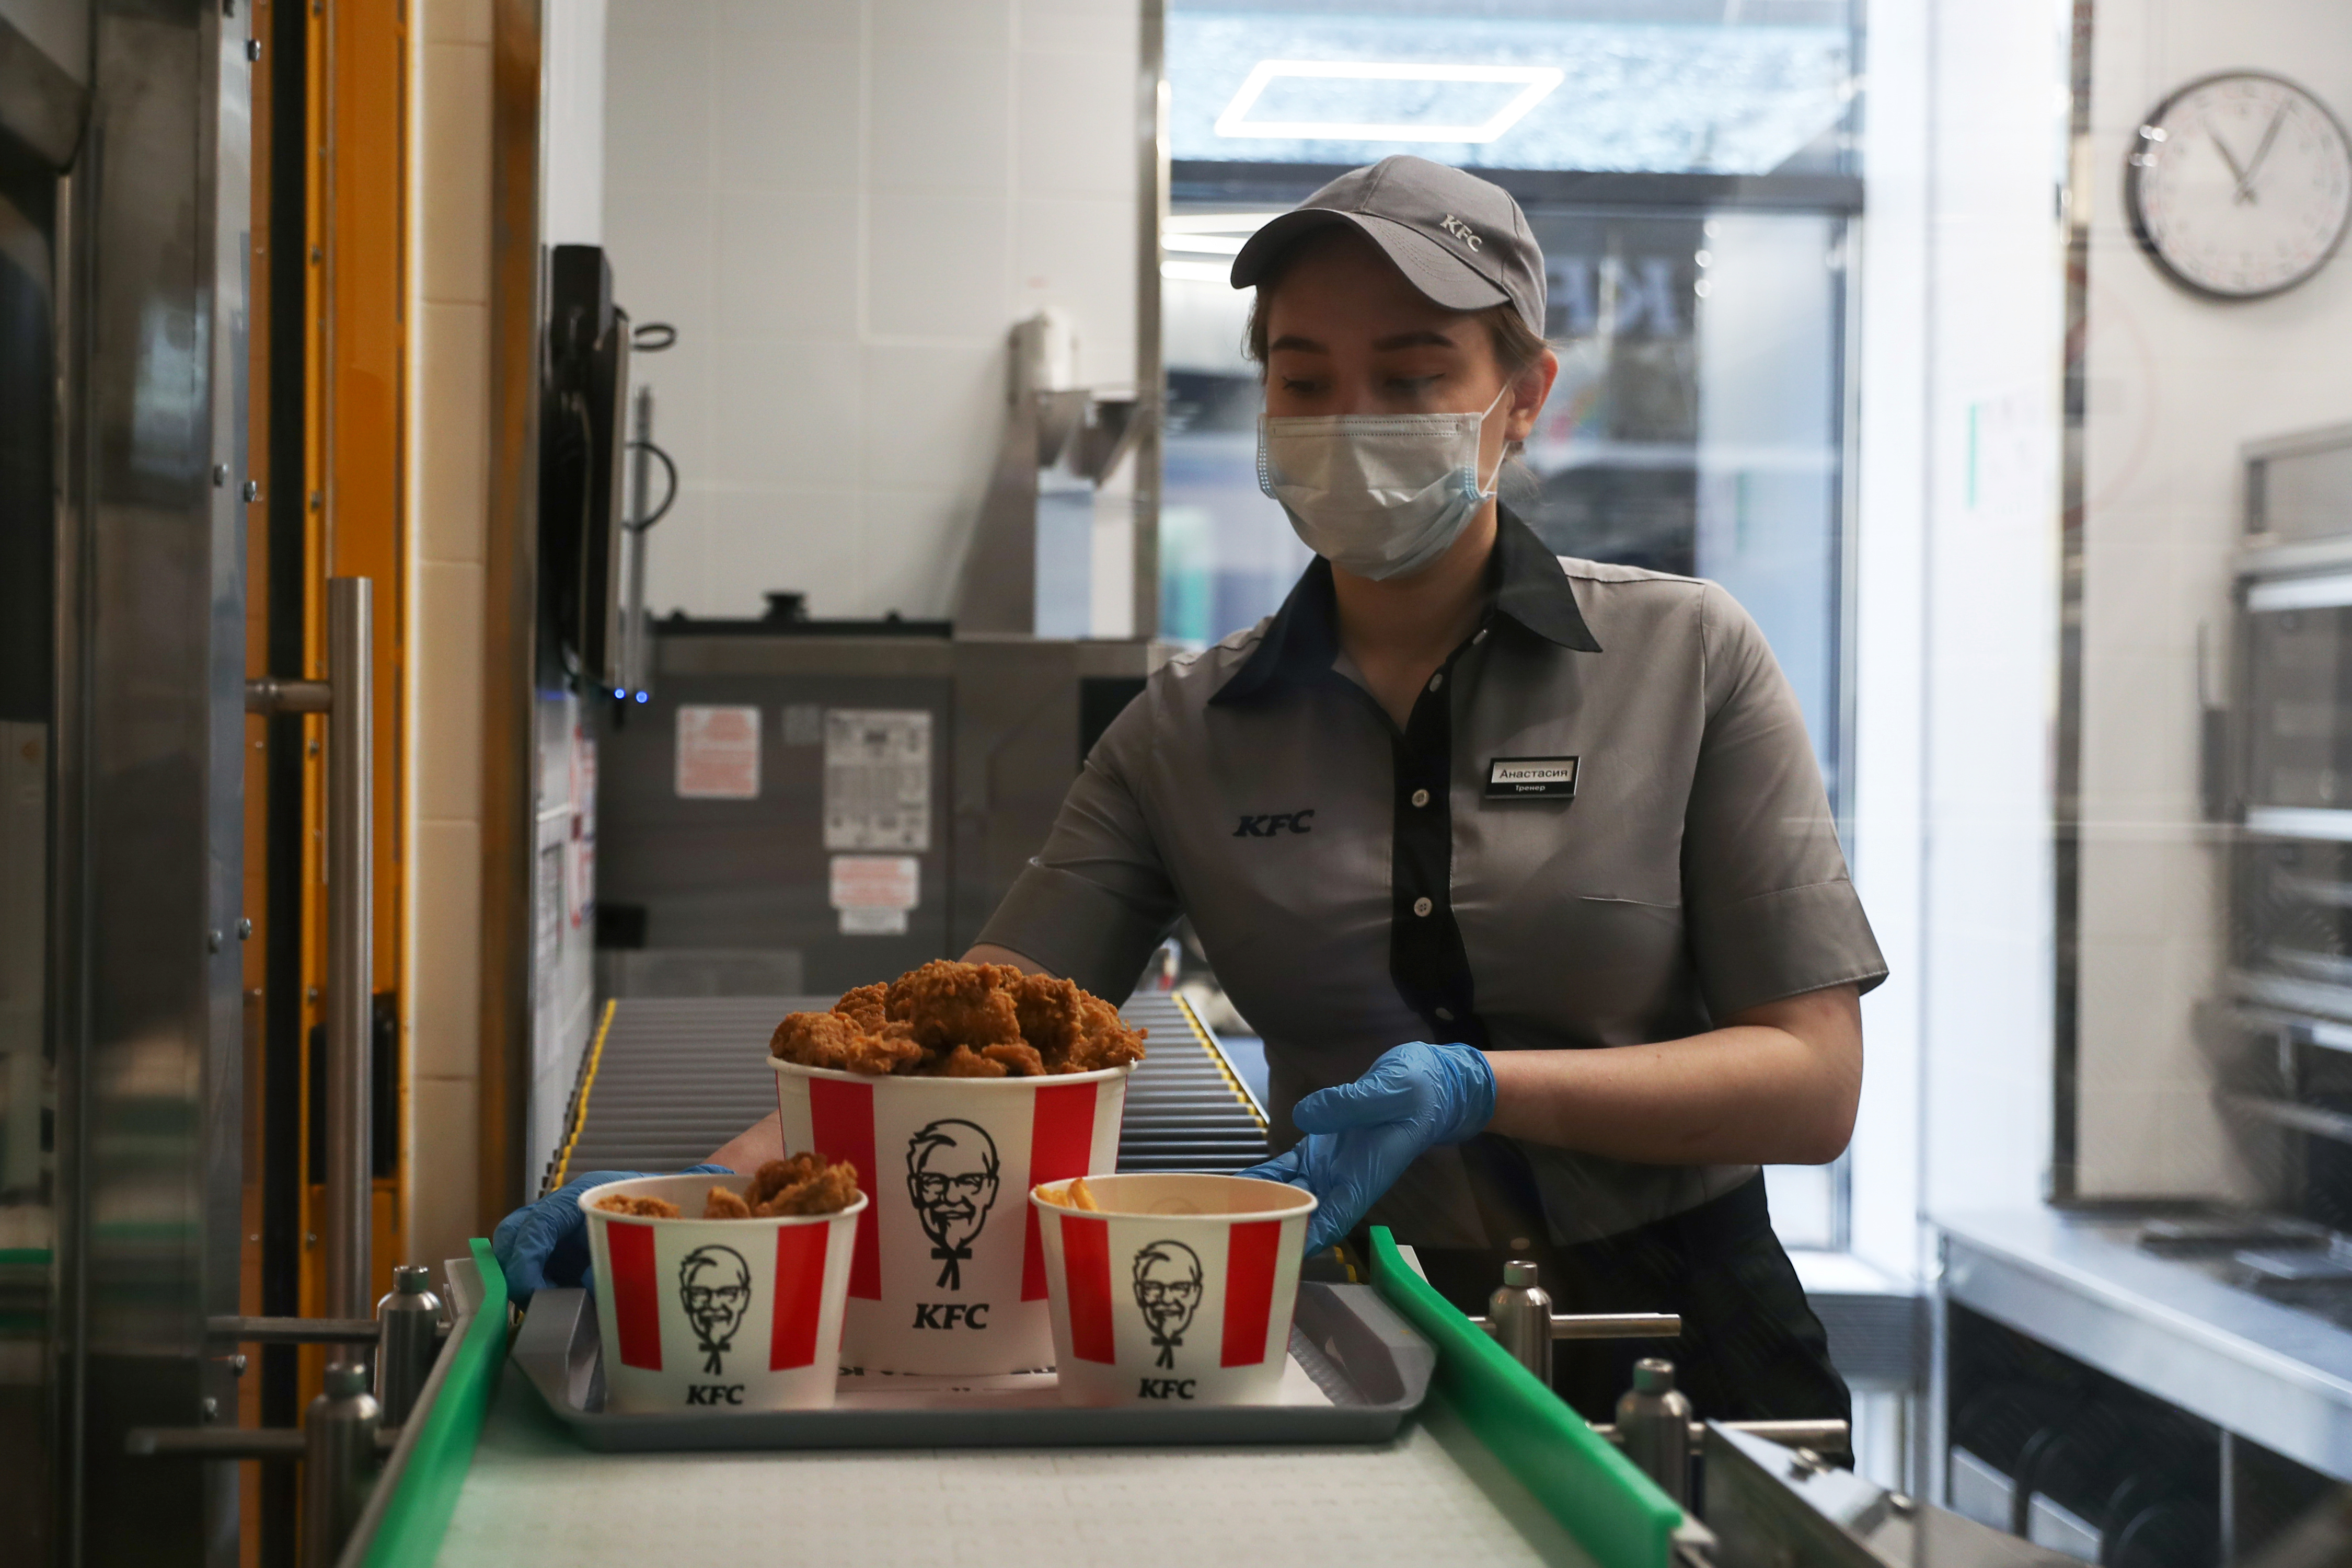 Un empleado coloca una bandeja de comida en una cinta transportadora en un restaurante de KFC que ofrece servicio sin contacto en Moscú, Rusia, el 21 de junio de 2020. REUTERS/Evgenia Novozhenina